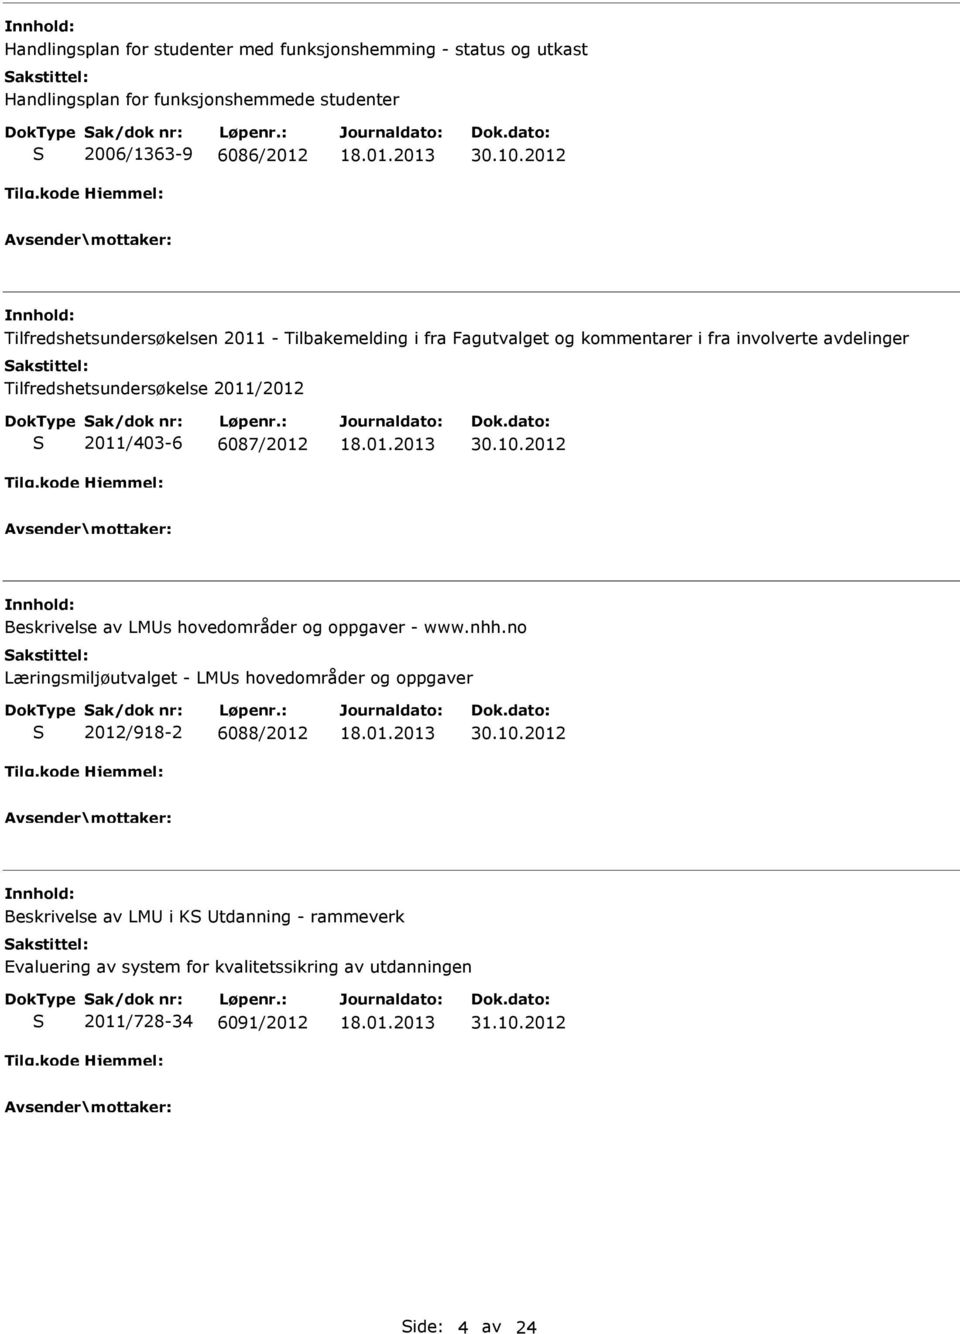 2011/403-6 6087/2012 30.10.2012 Beskrivelse av LMUs hovedområder og oppgaver - www.nhh.